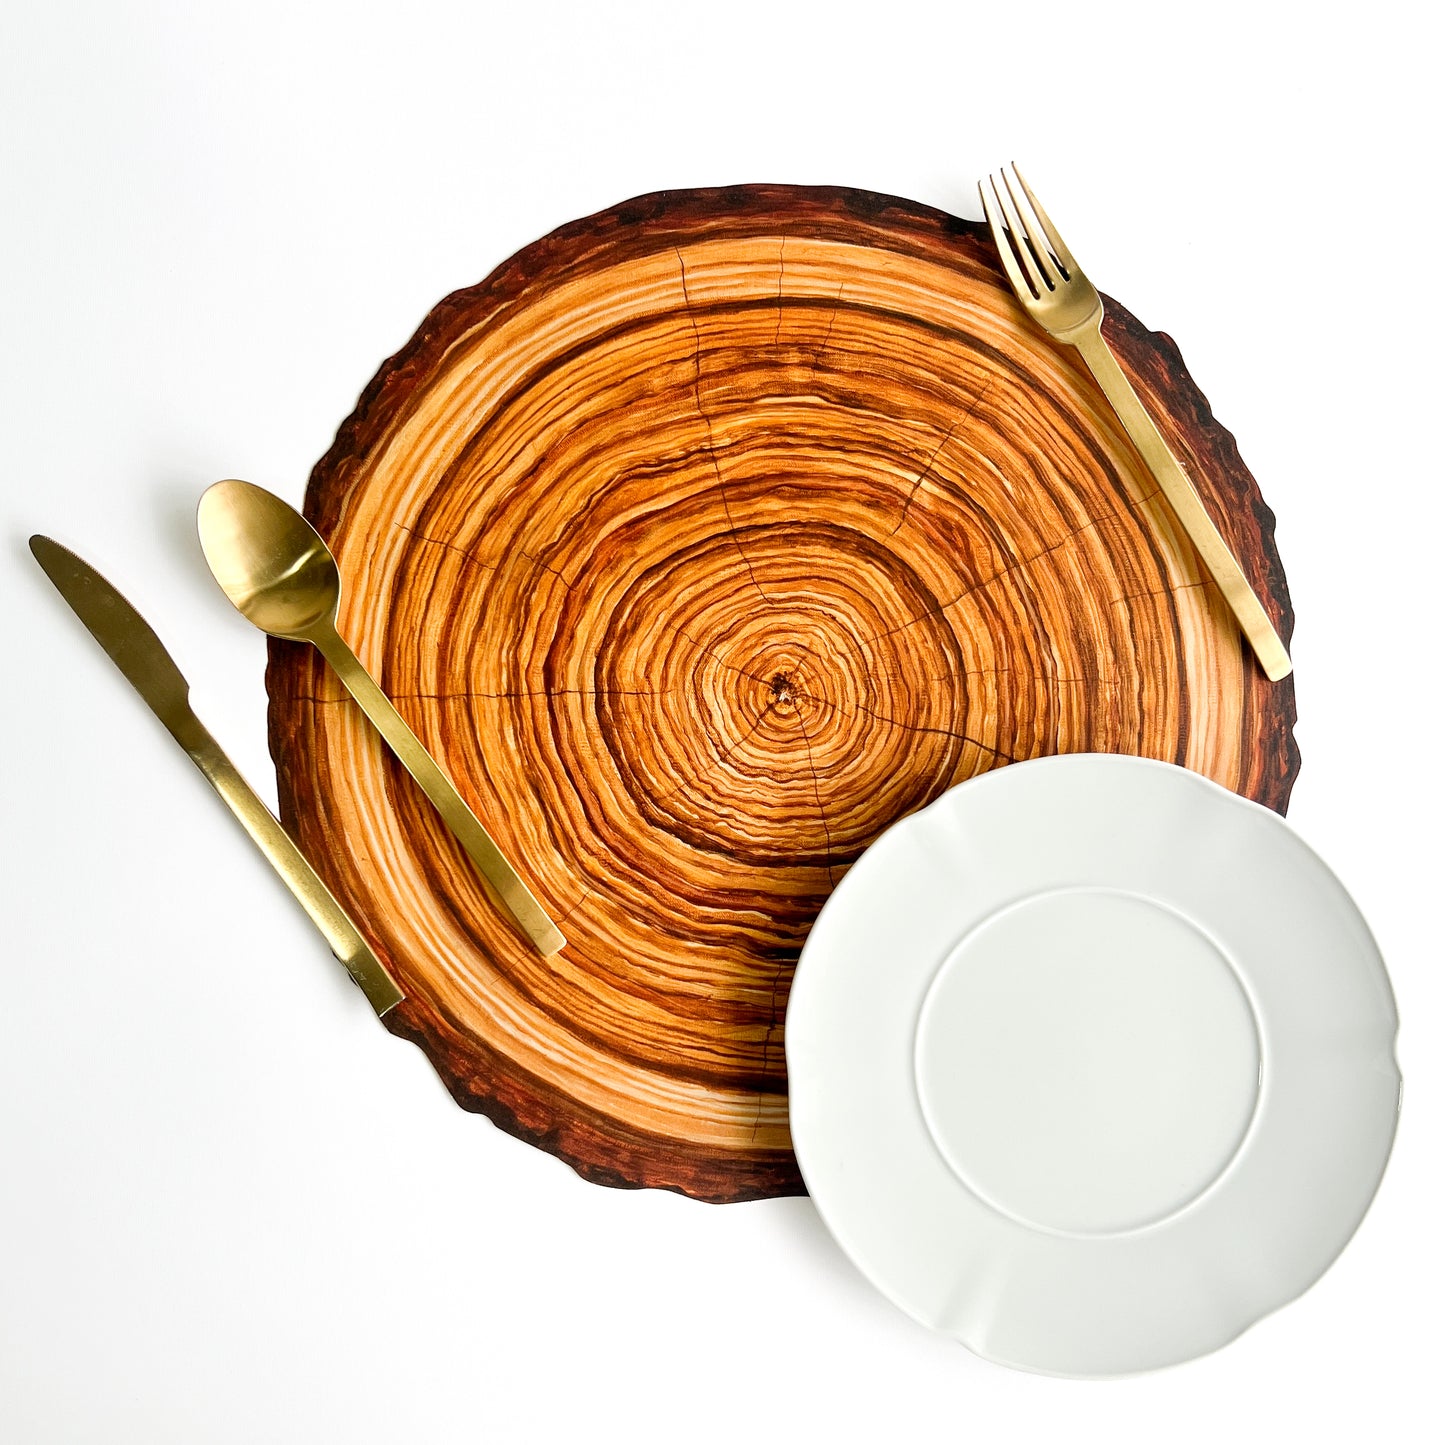 Die Cut Wood Slice Placemats